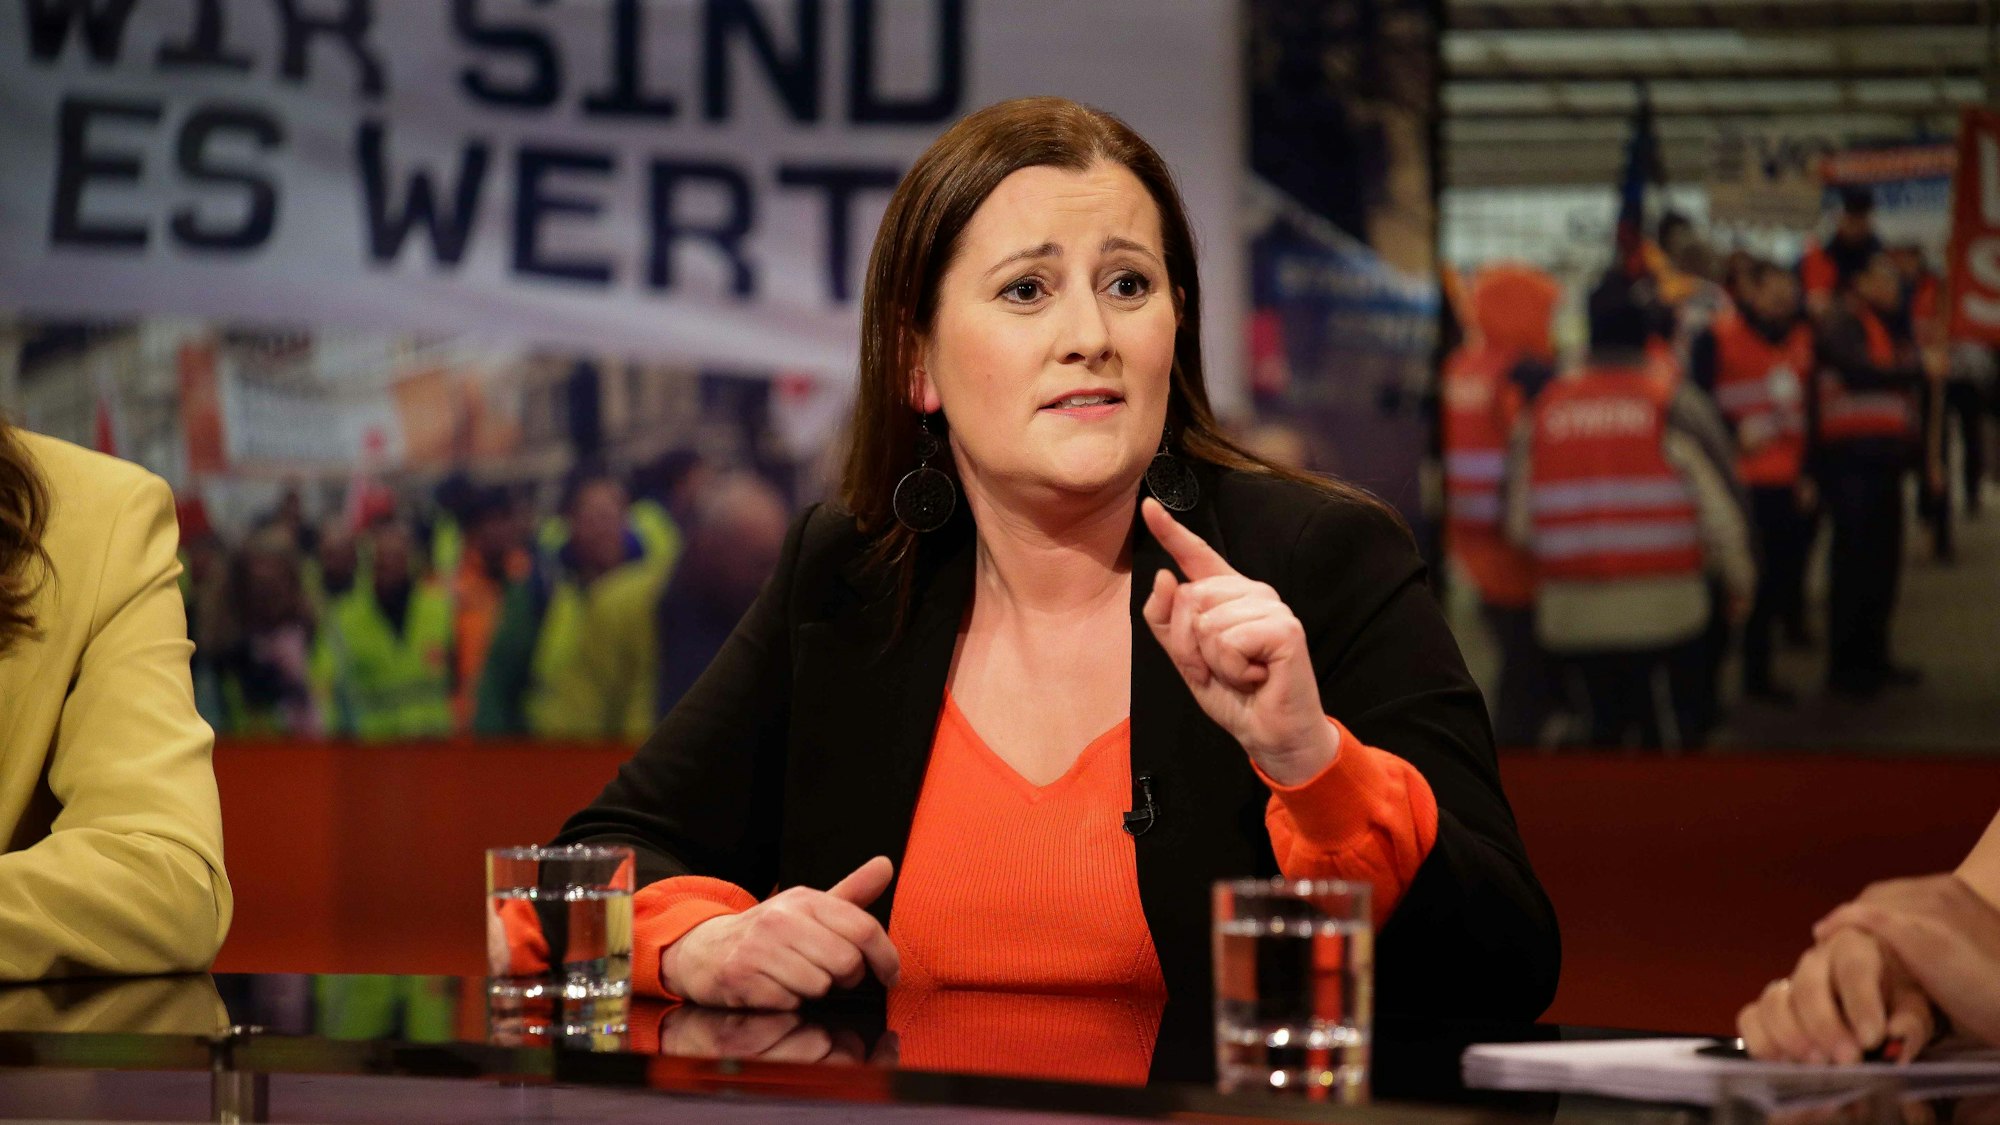 Janine Wissler, Parteivorsitzende der „Linkspartei“, hat in der ARD-Sendung „Hart aber fair“ die Streiks und den Kampf um höhere Löhne für die Arbeitnehmer verteidigt.